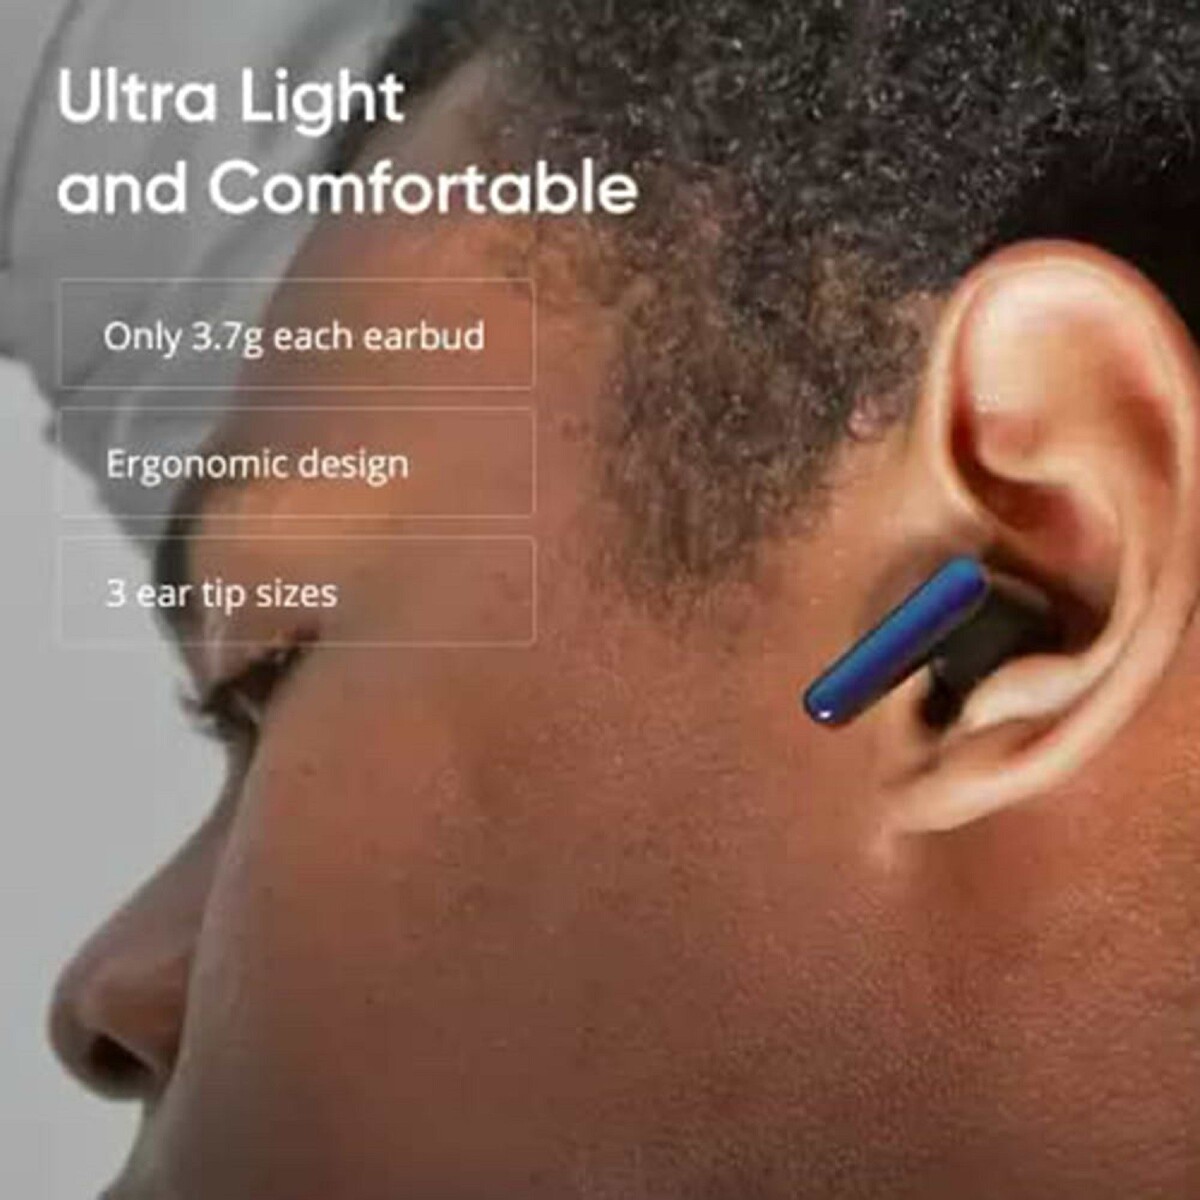 DIZO by realme TechLife Buds Z Bluetooth Headset DA2117 Onyx Black, True Wireless